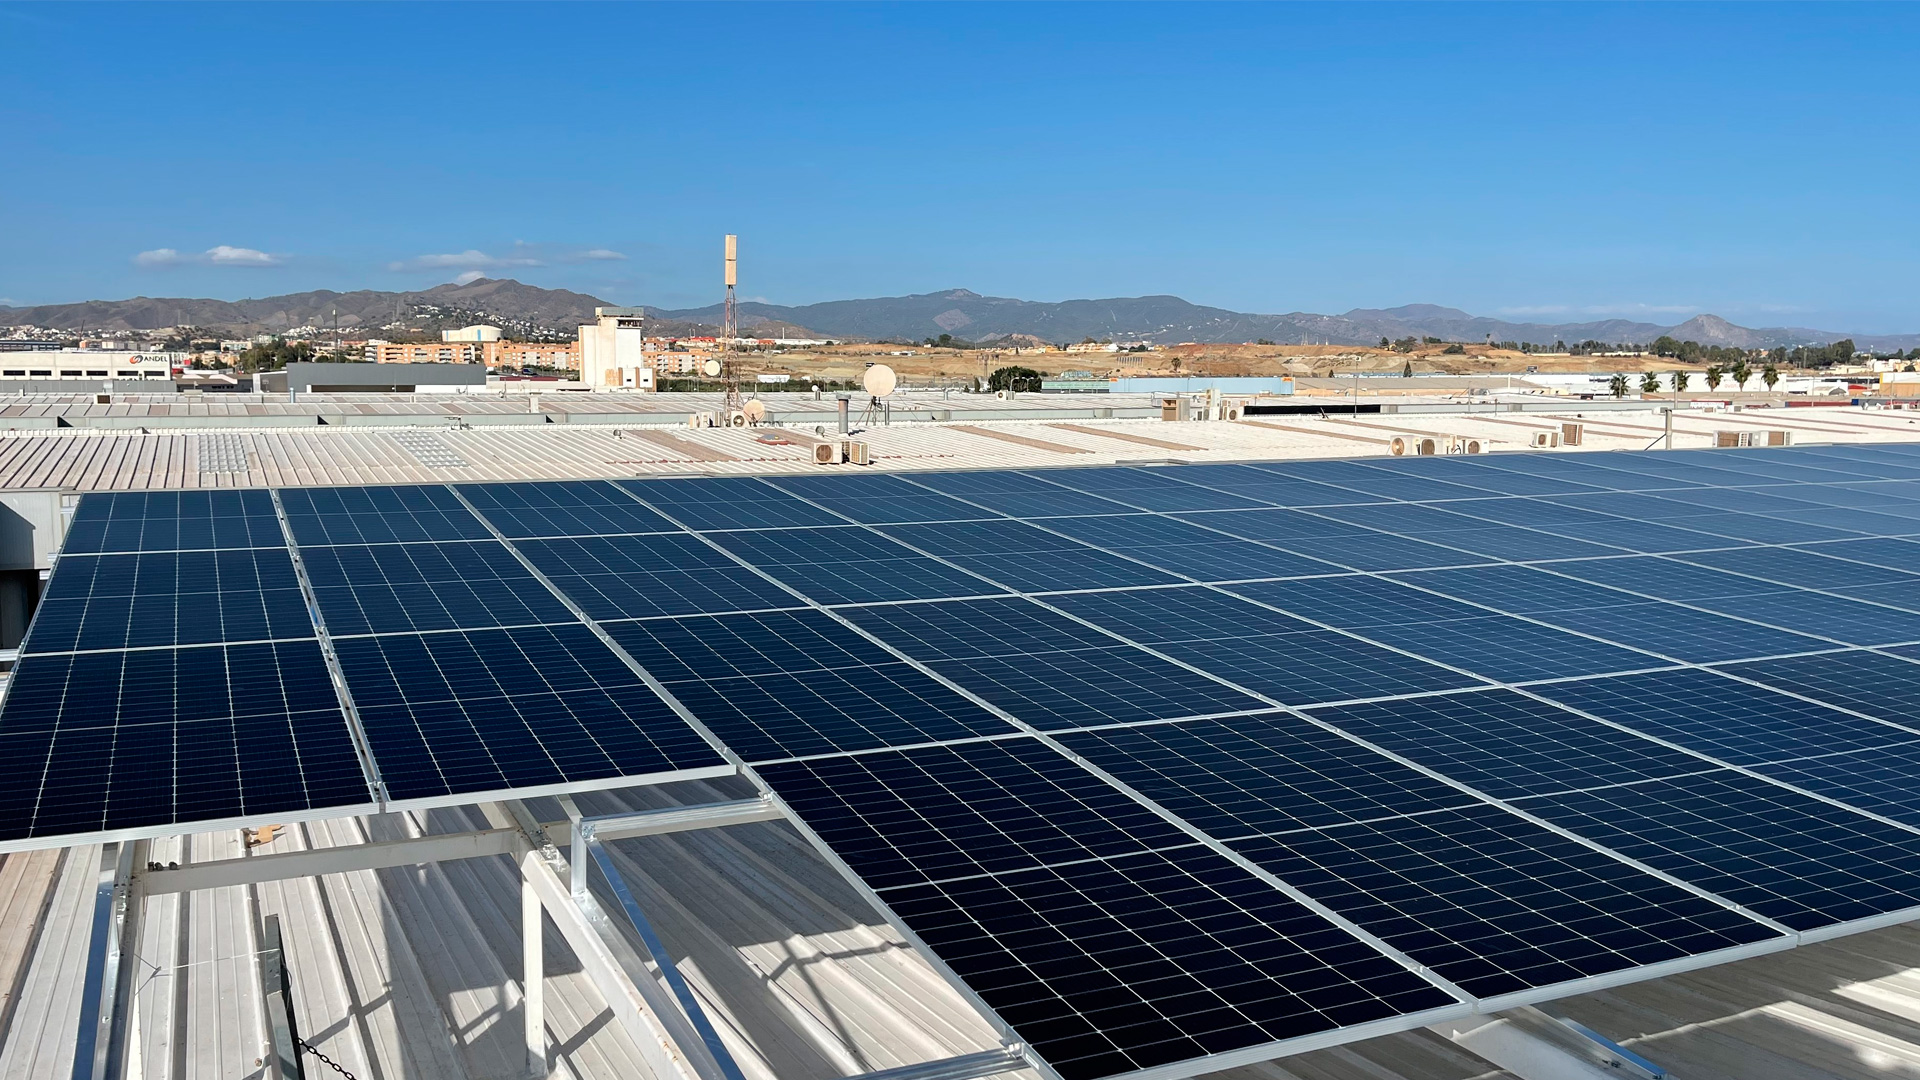 Placas solares instaladas sobre un tejado industrial